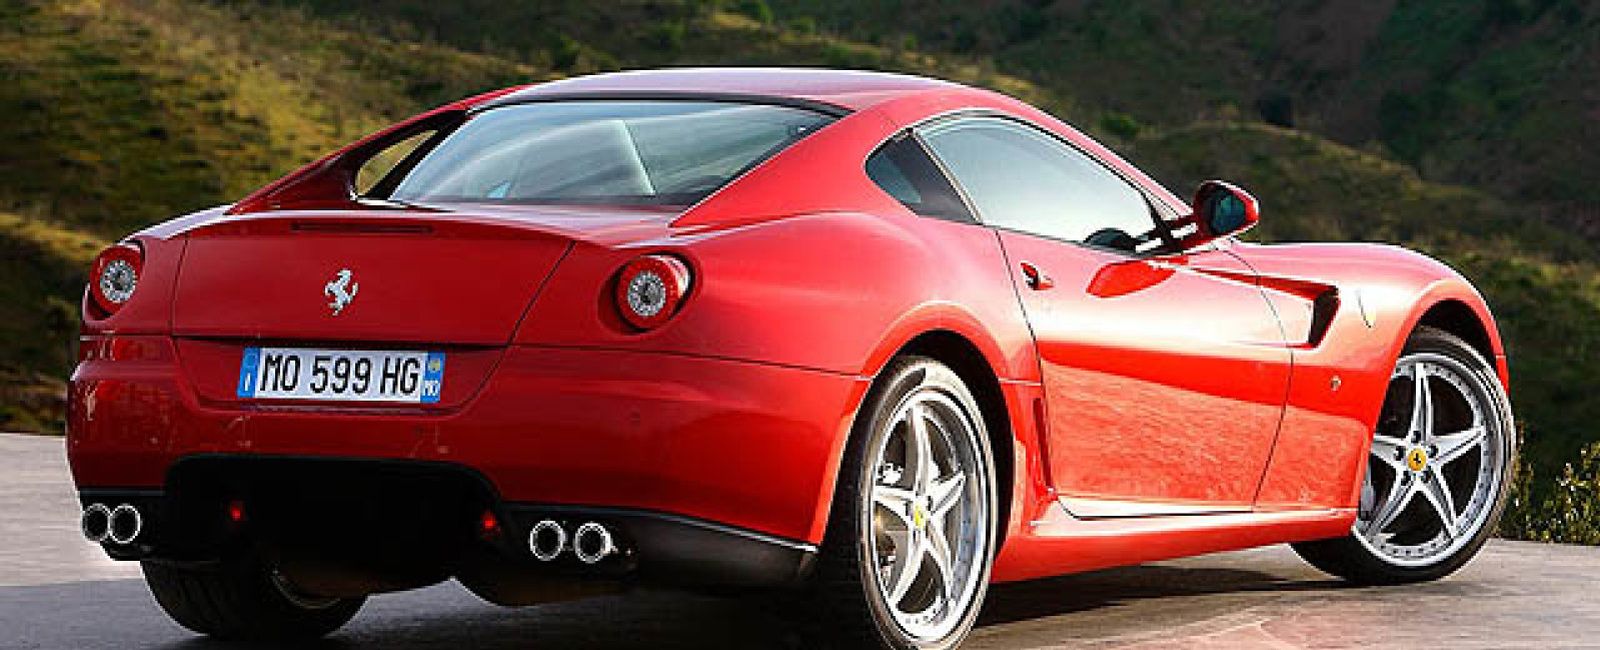 Foto: El rojo de Ferrari puede ser clave para los discos duros del futuro